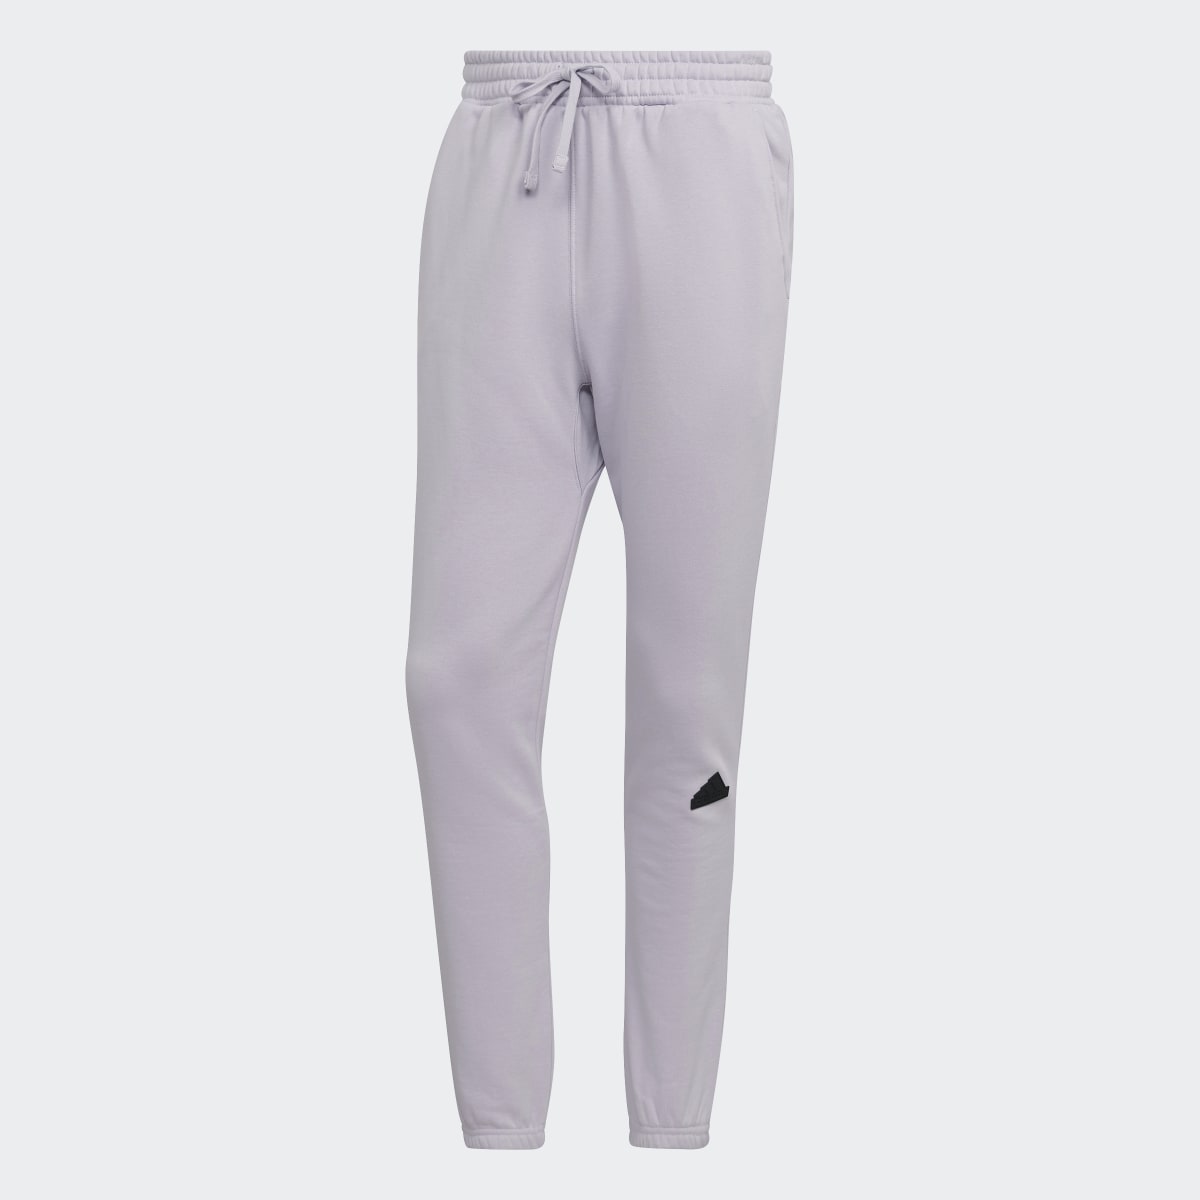 Adidas Fleece Pants. 5